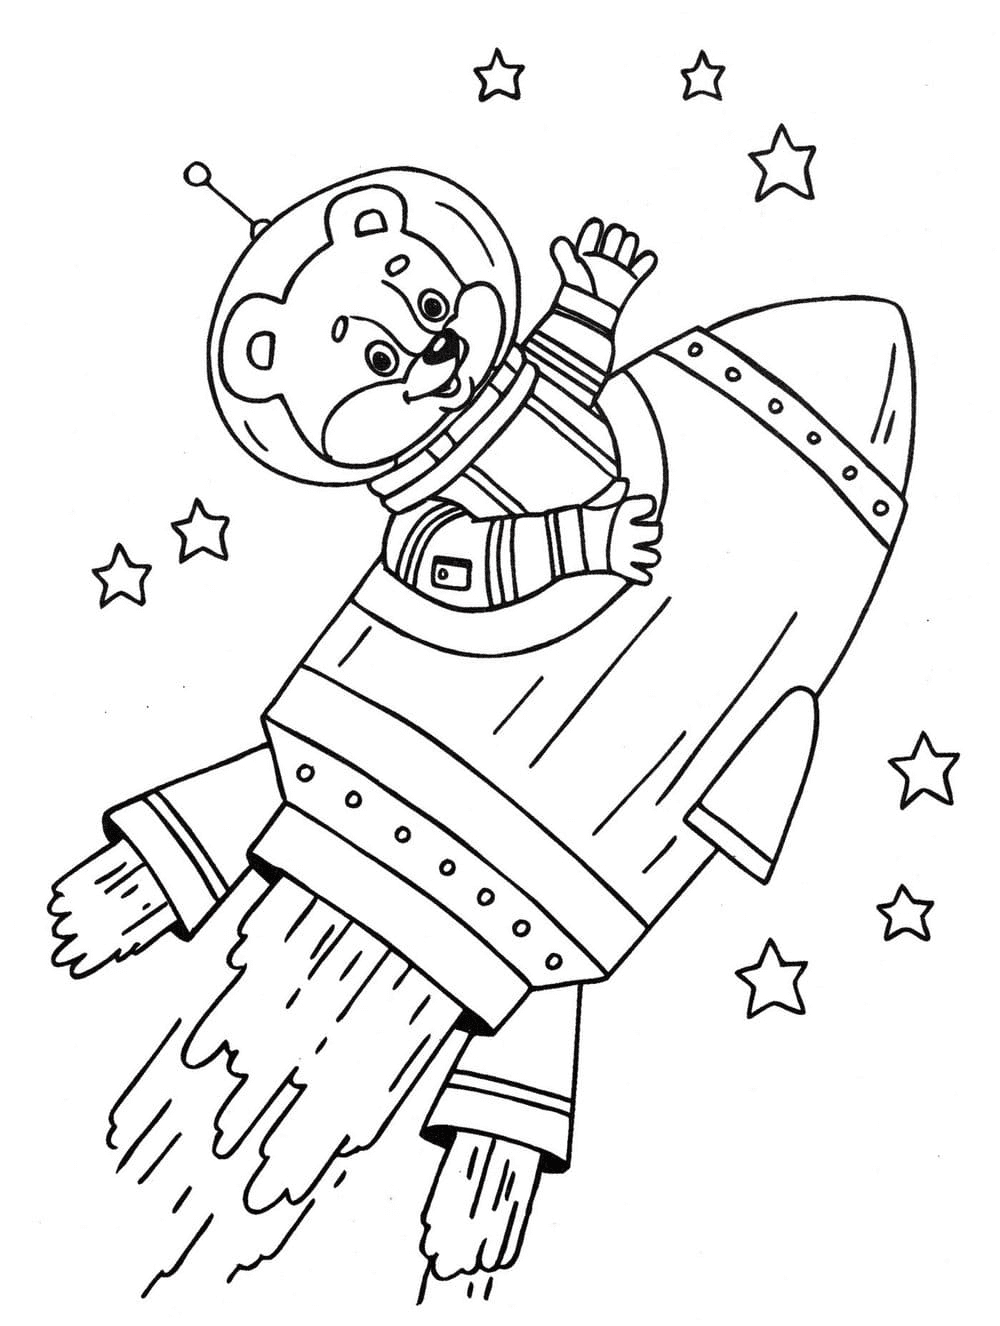 L'orso vola nello spazio dal pianeta